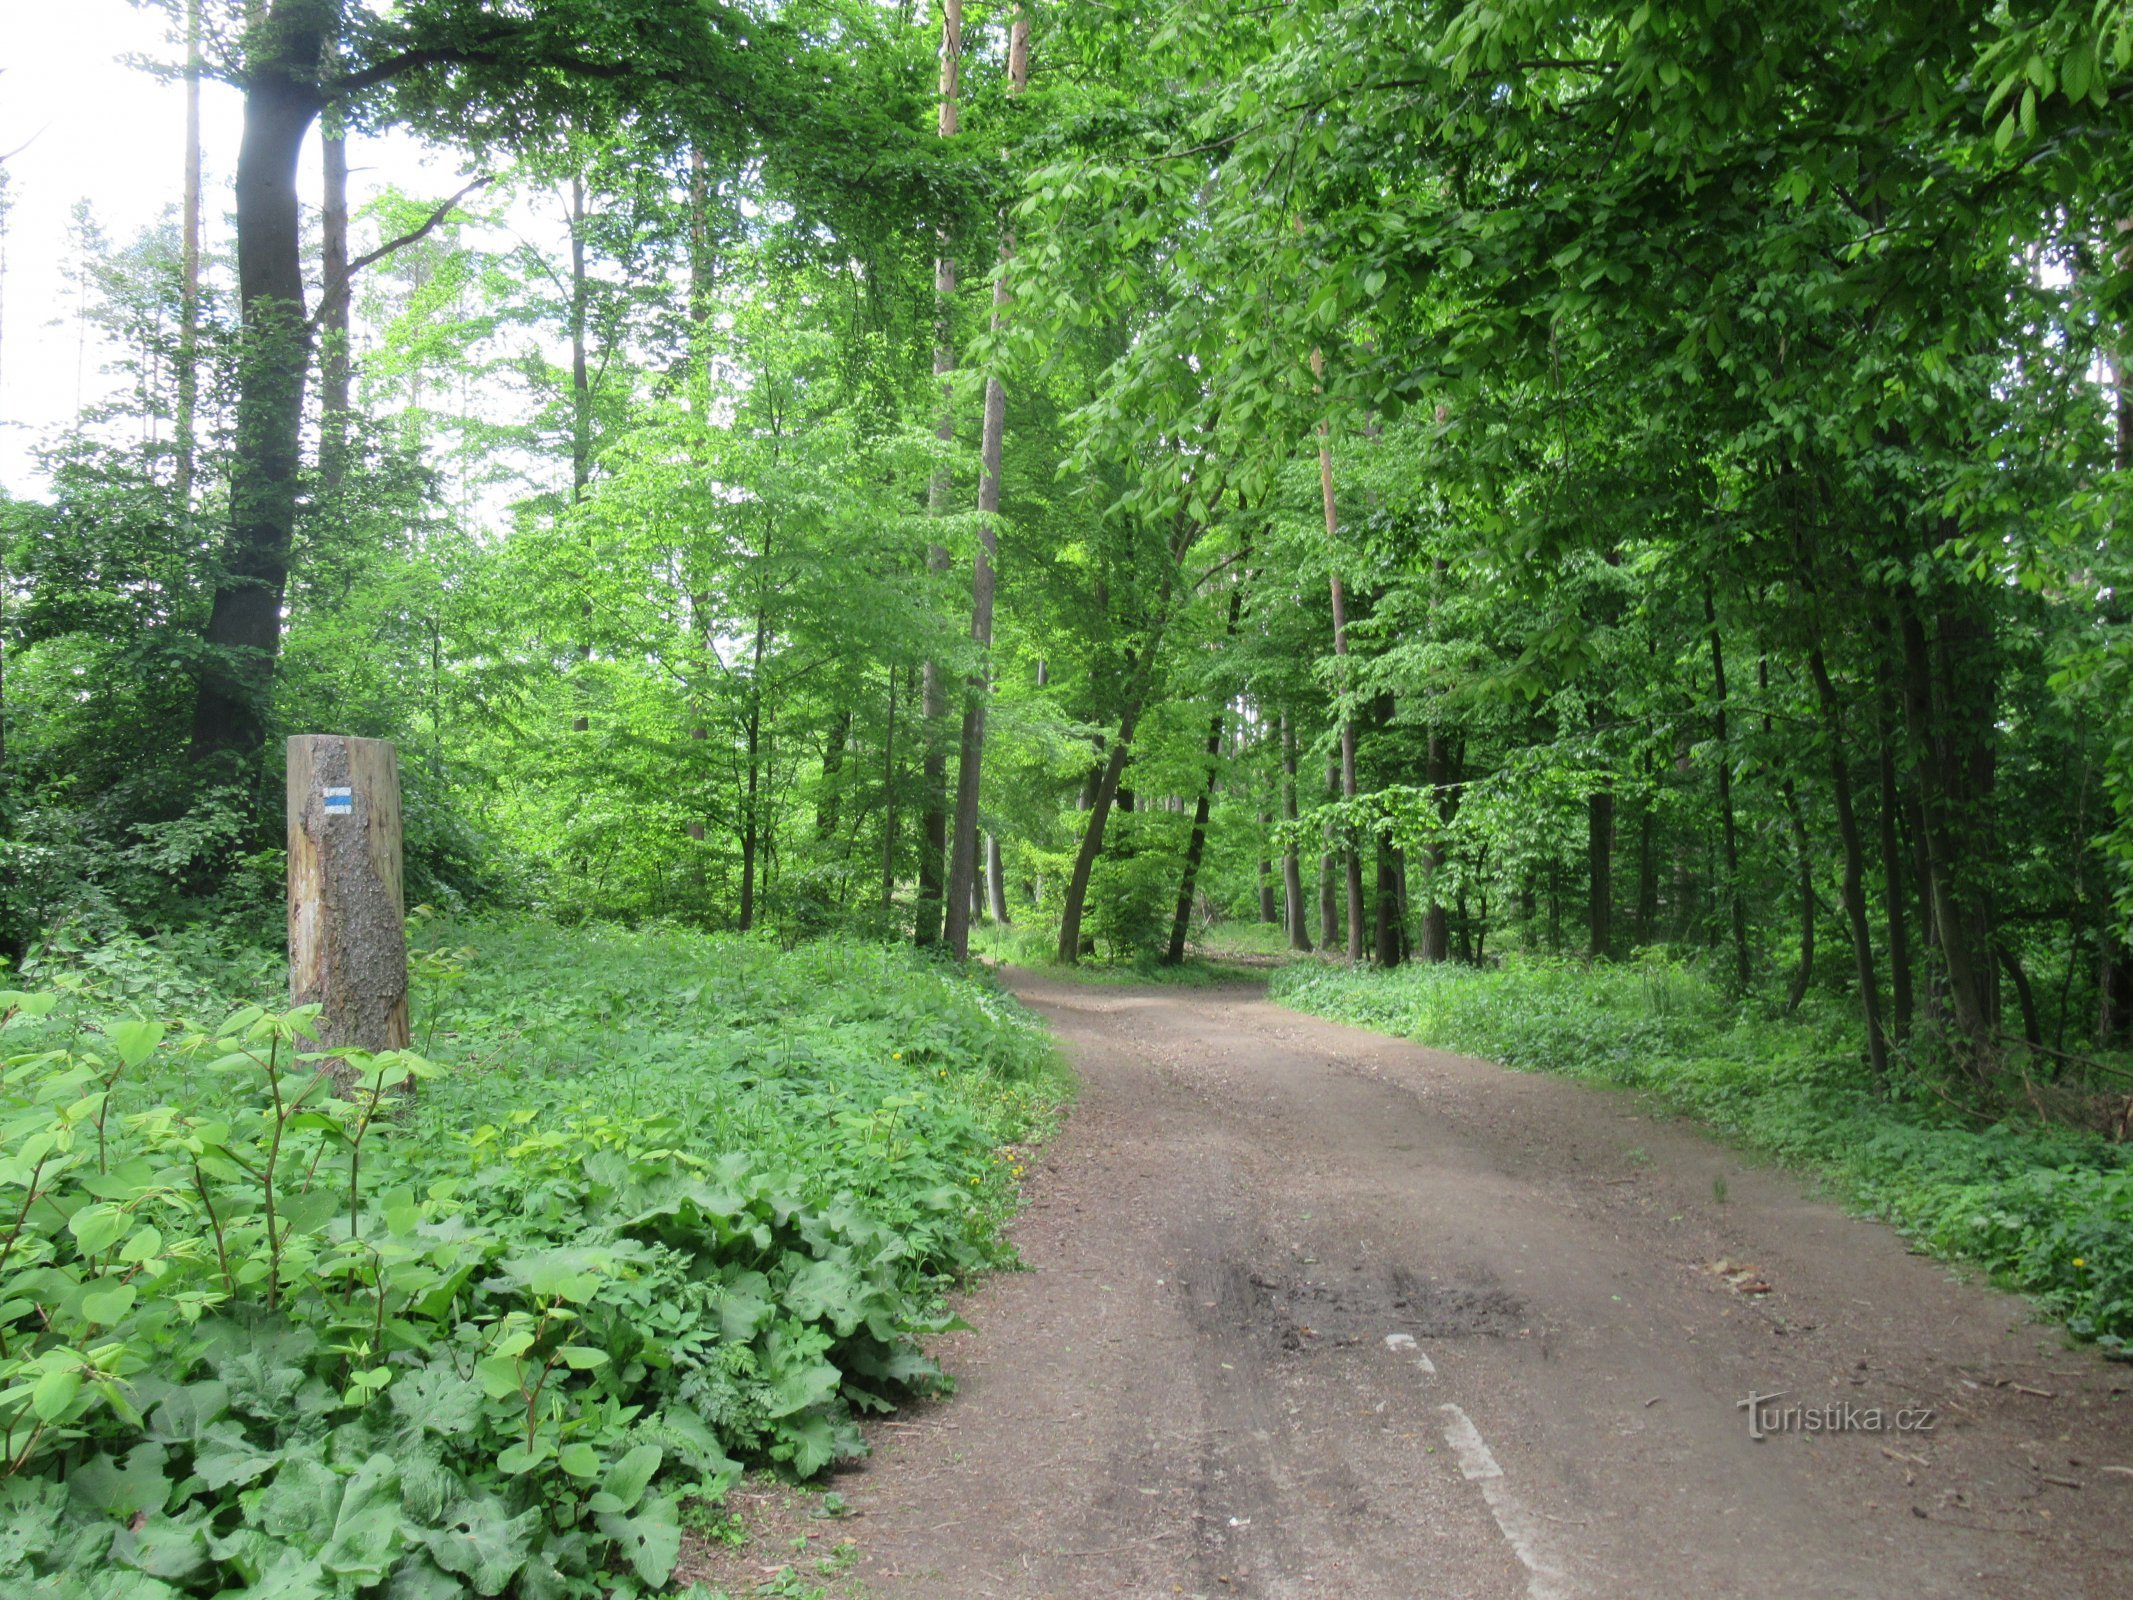 A rota passa principalmente por florestas decíduas